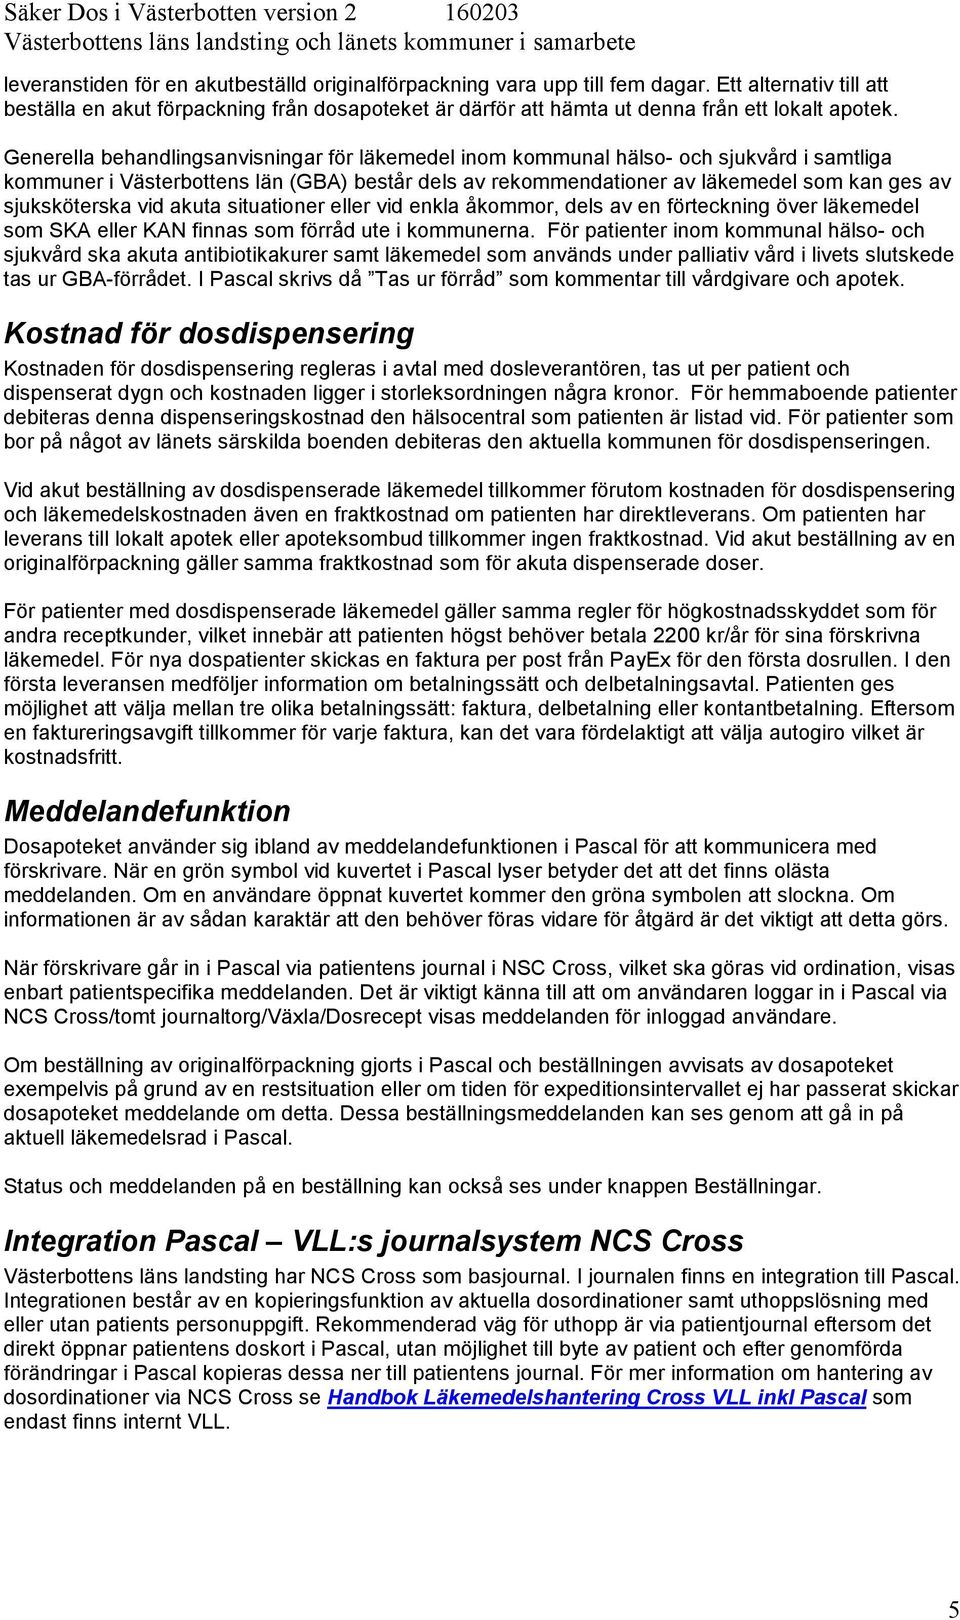 Generella behandlingsanvisningar för läkemedel inom kommunal hälso- och sjukvård i samtliga kommuner i Västerbottens län (GBA) består dels av rekommendationer av läkemedel som kan ges av